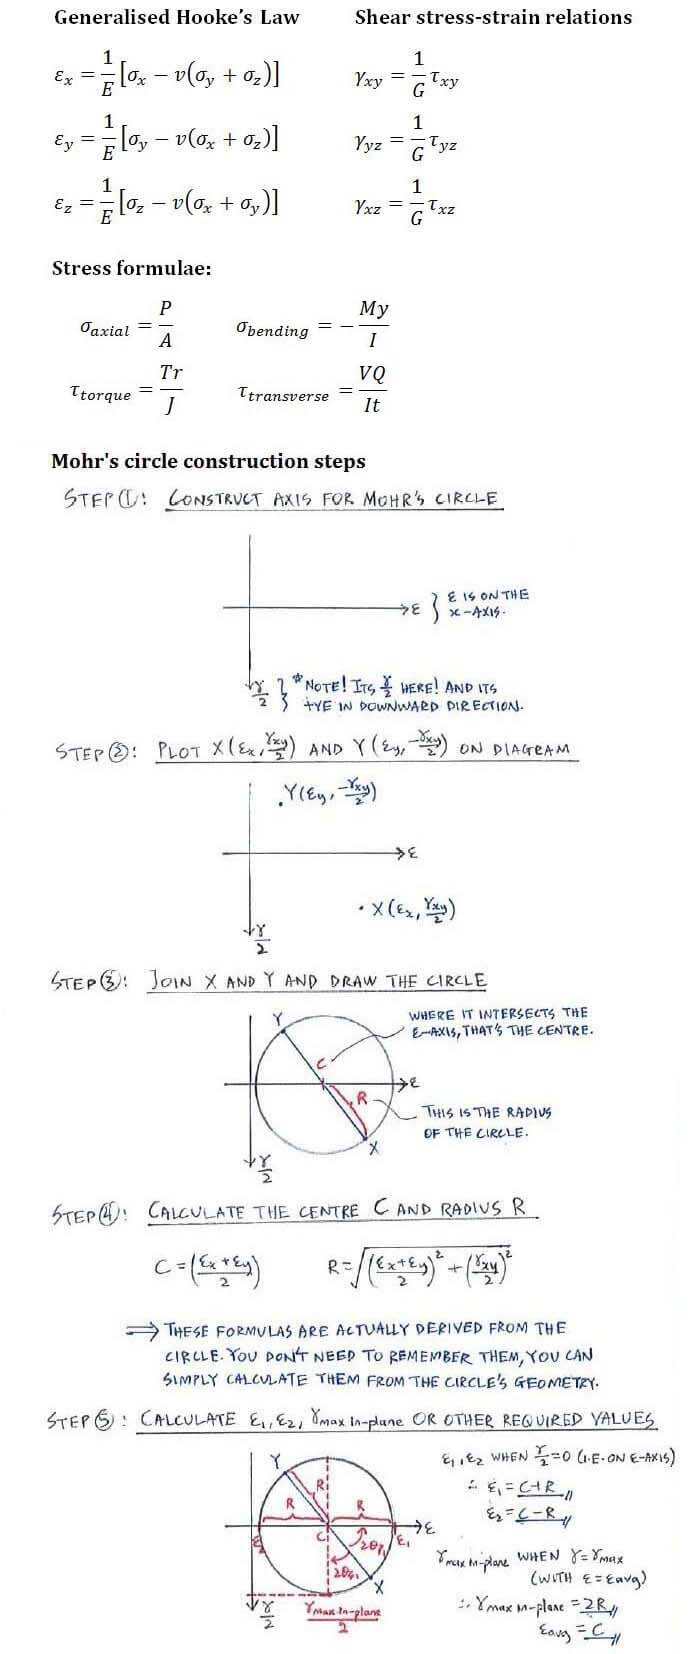 Generalised Hooke’s Law formula